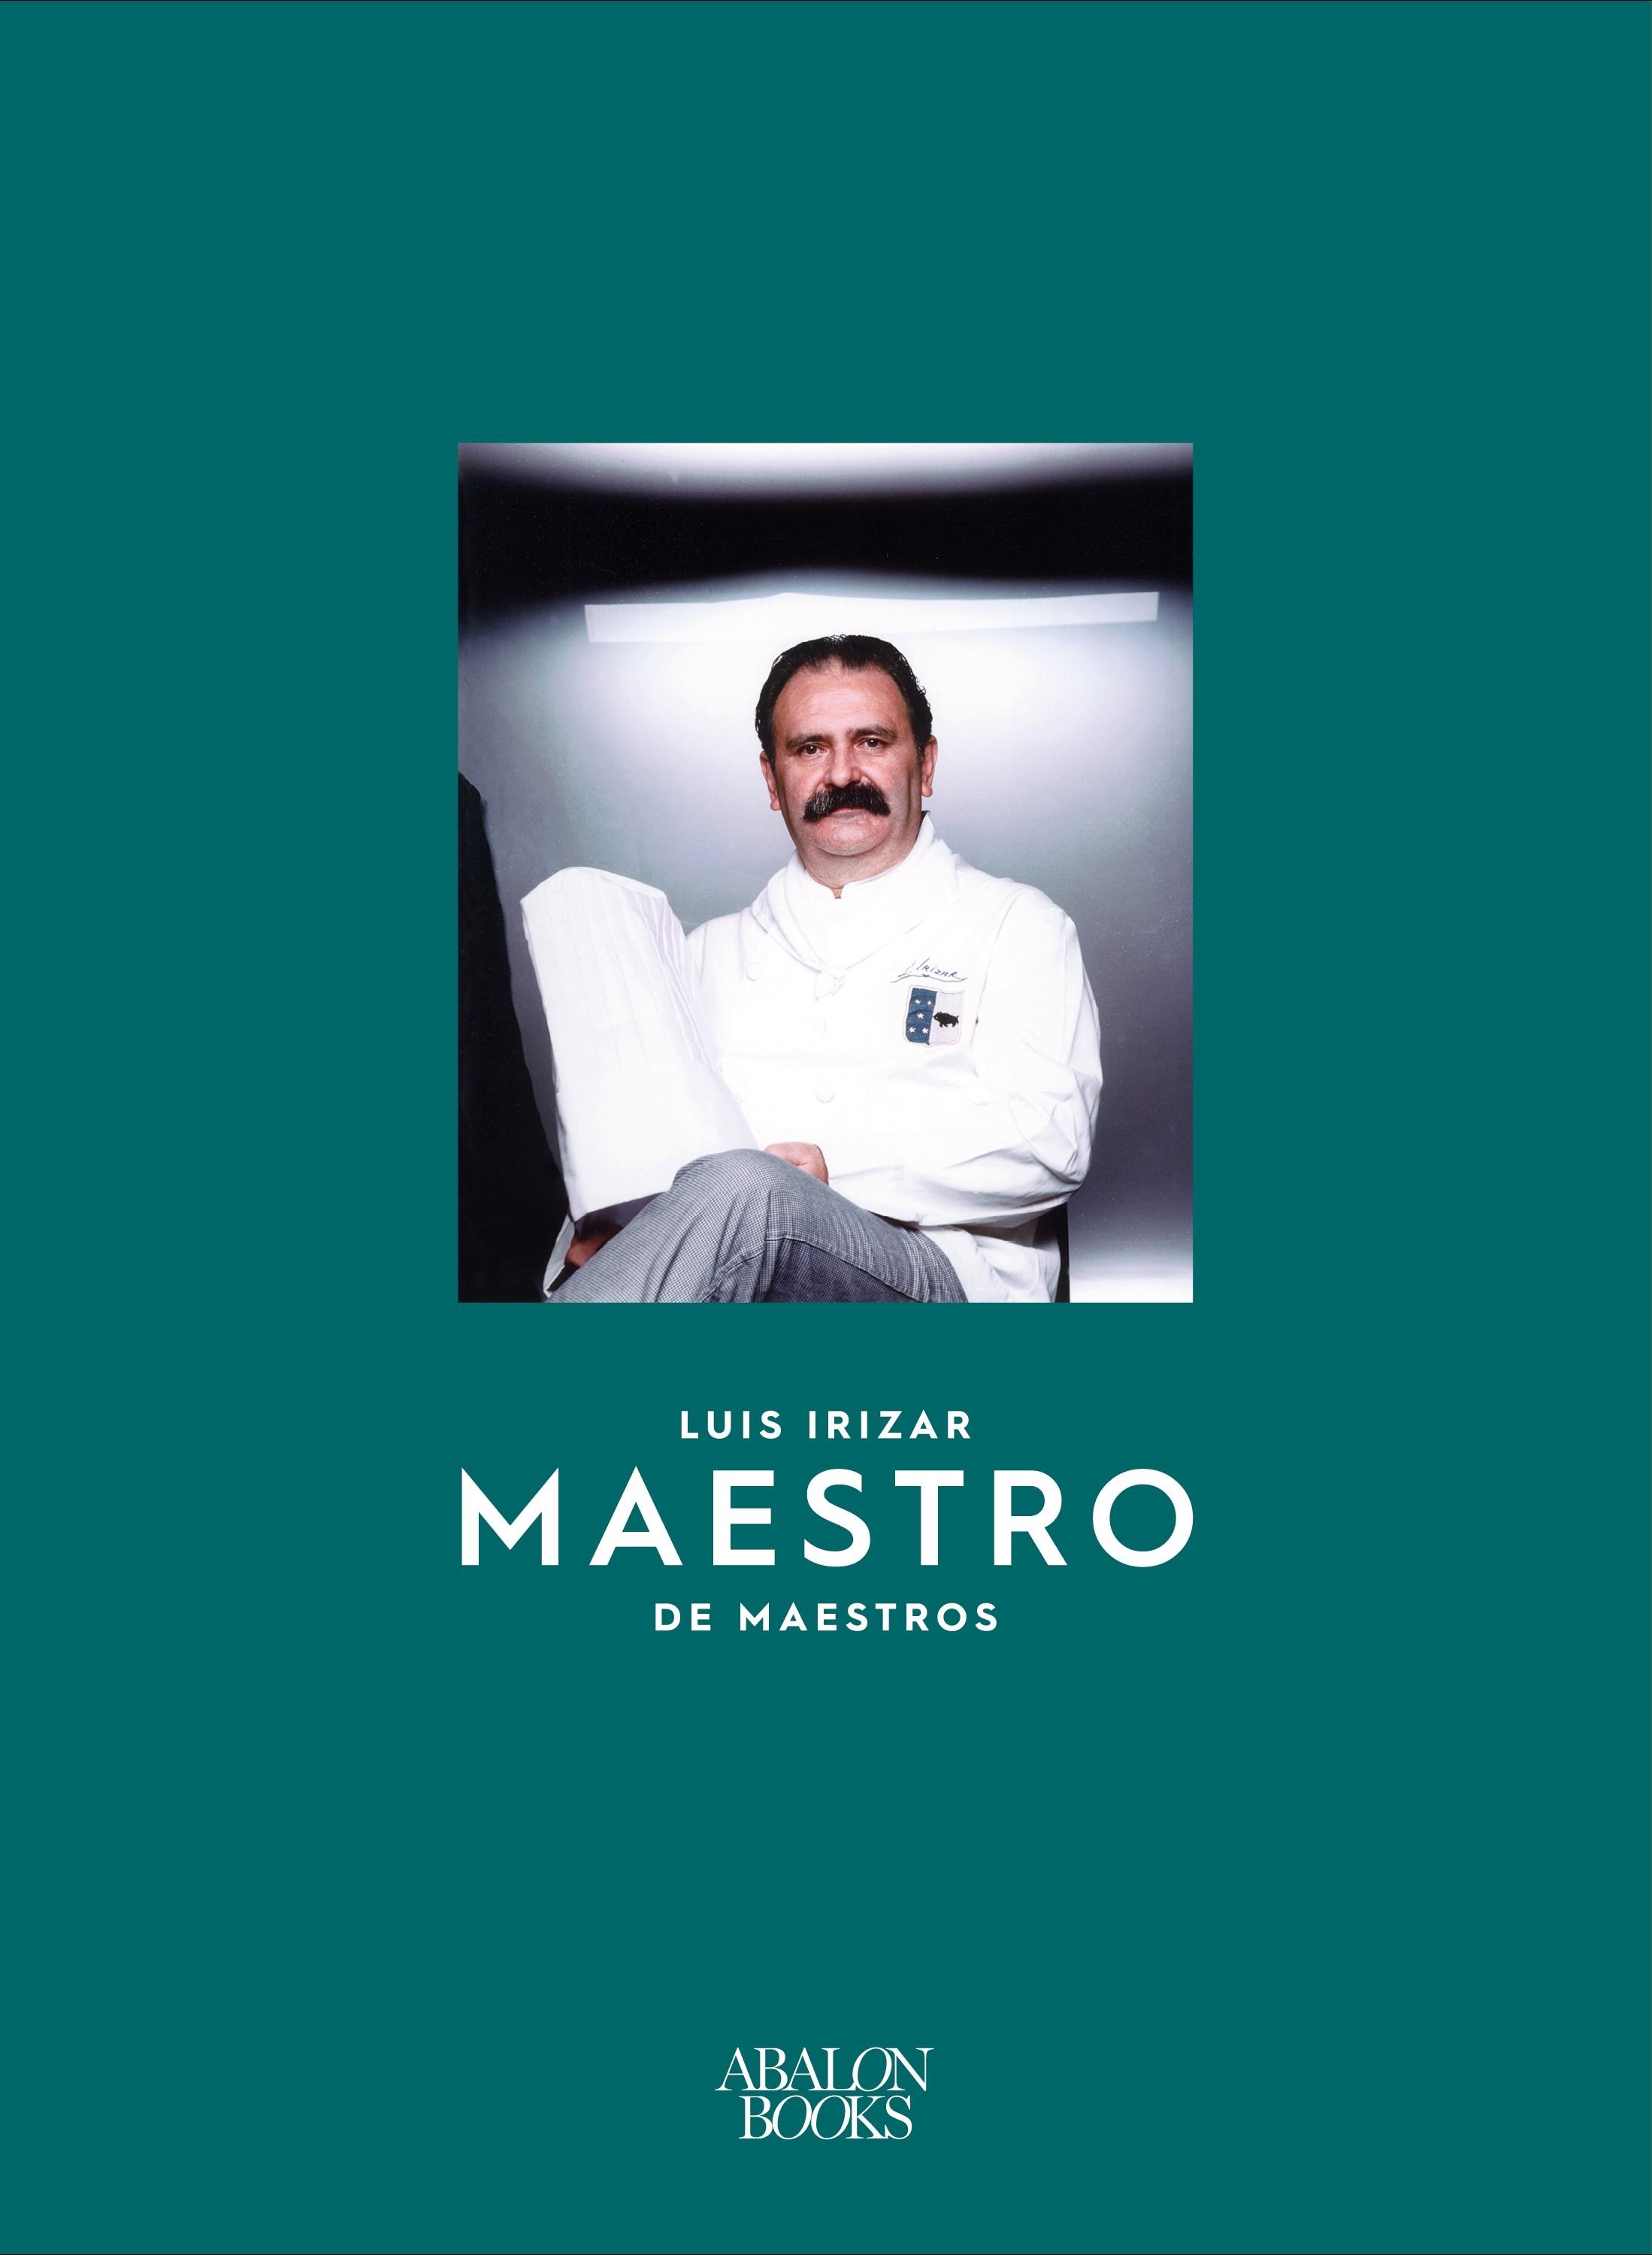 Luis Irizar "Maestro de Maestros". 